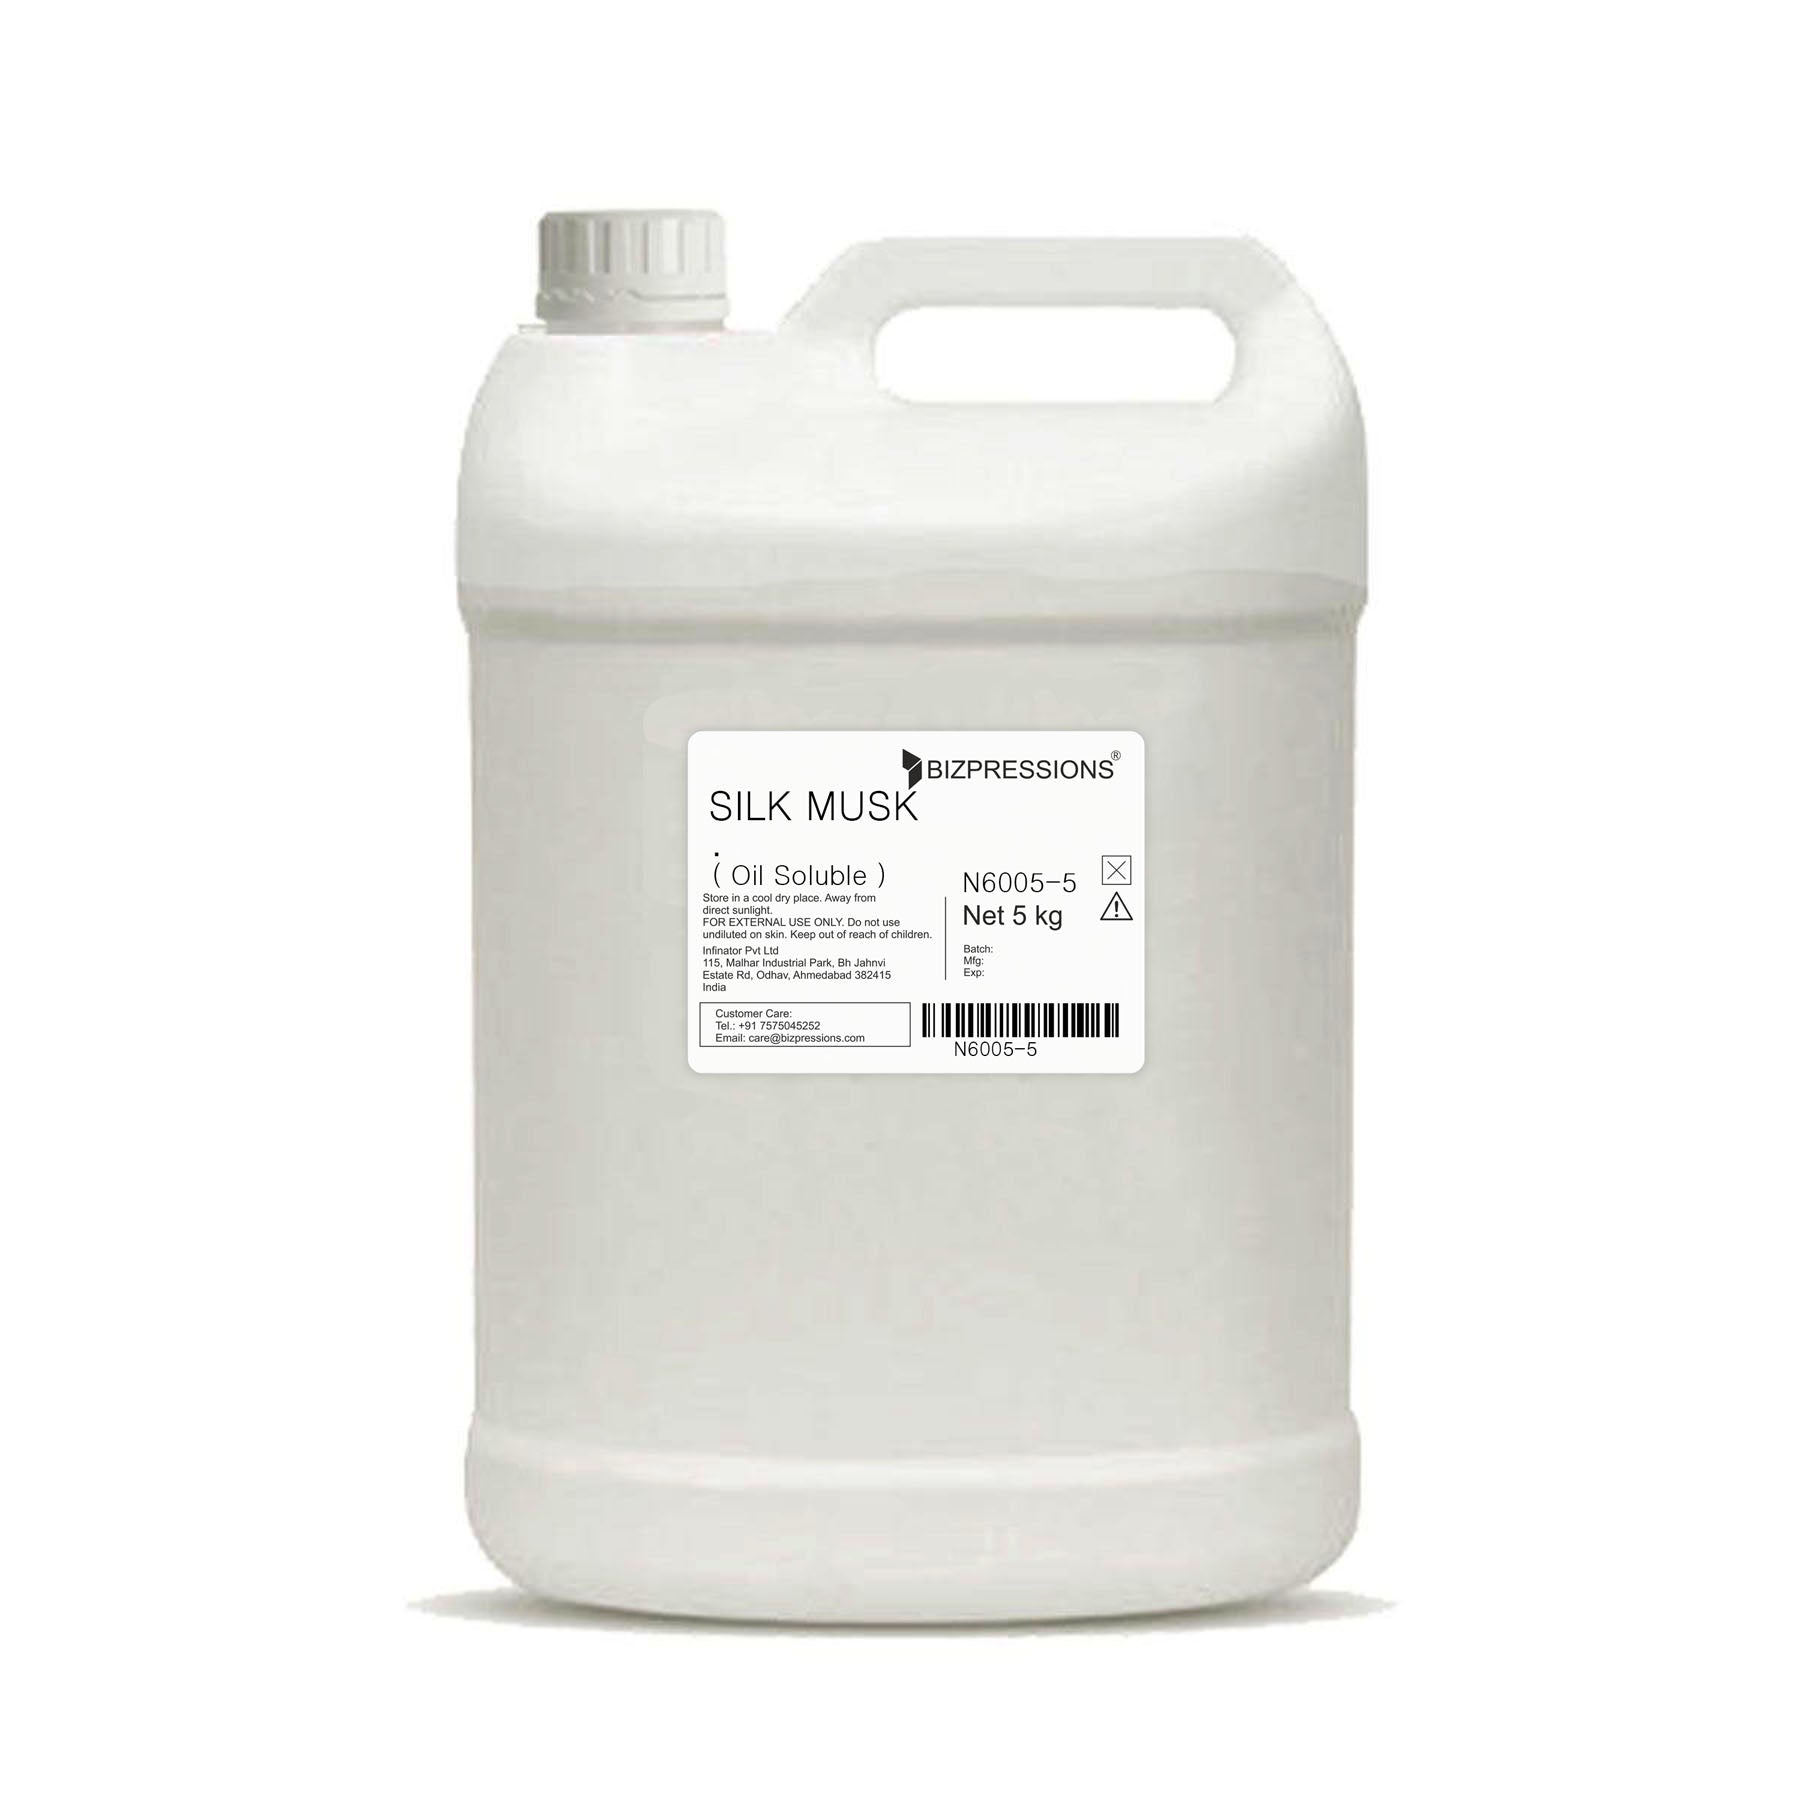 SILK MUSK - Fragrance ( Oil Soluble ) - 5 kg